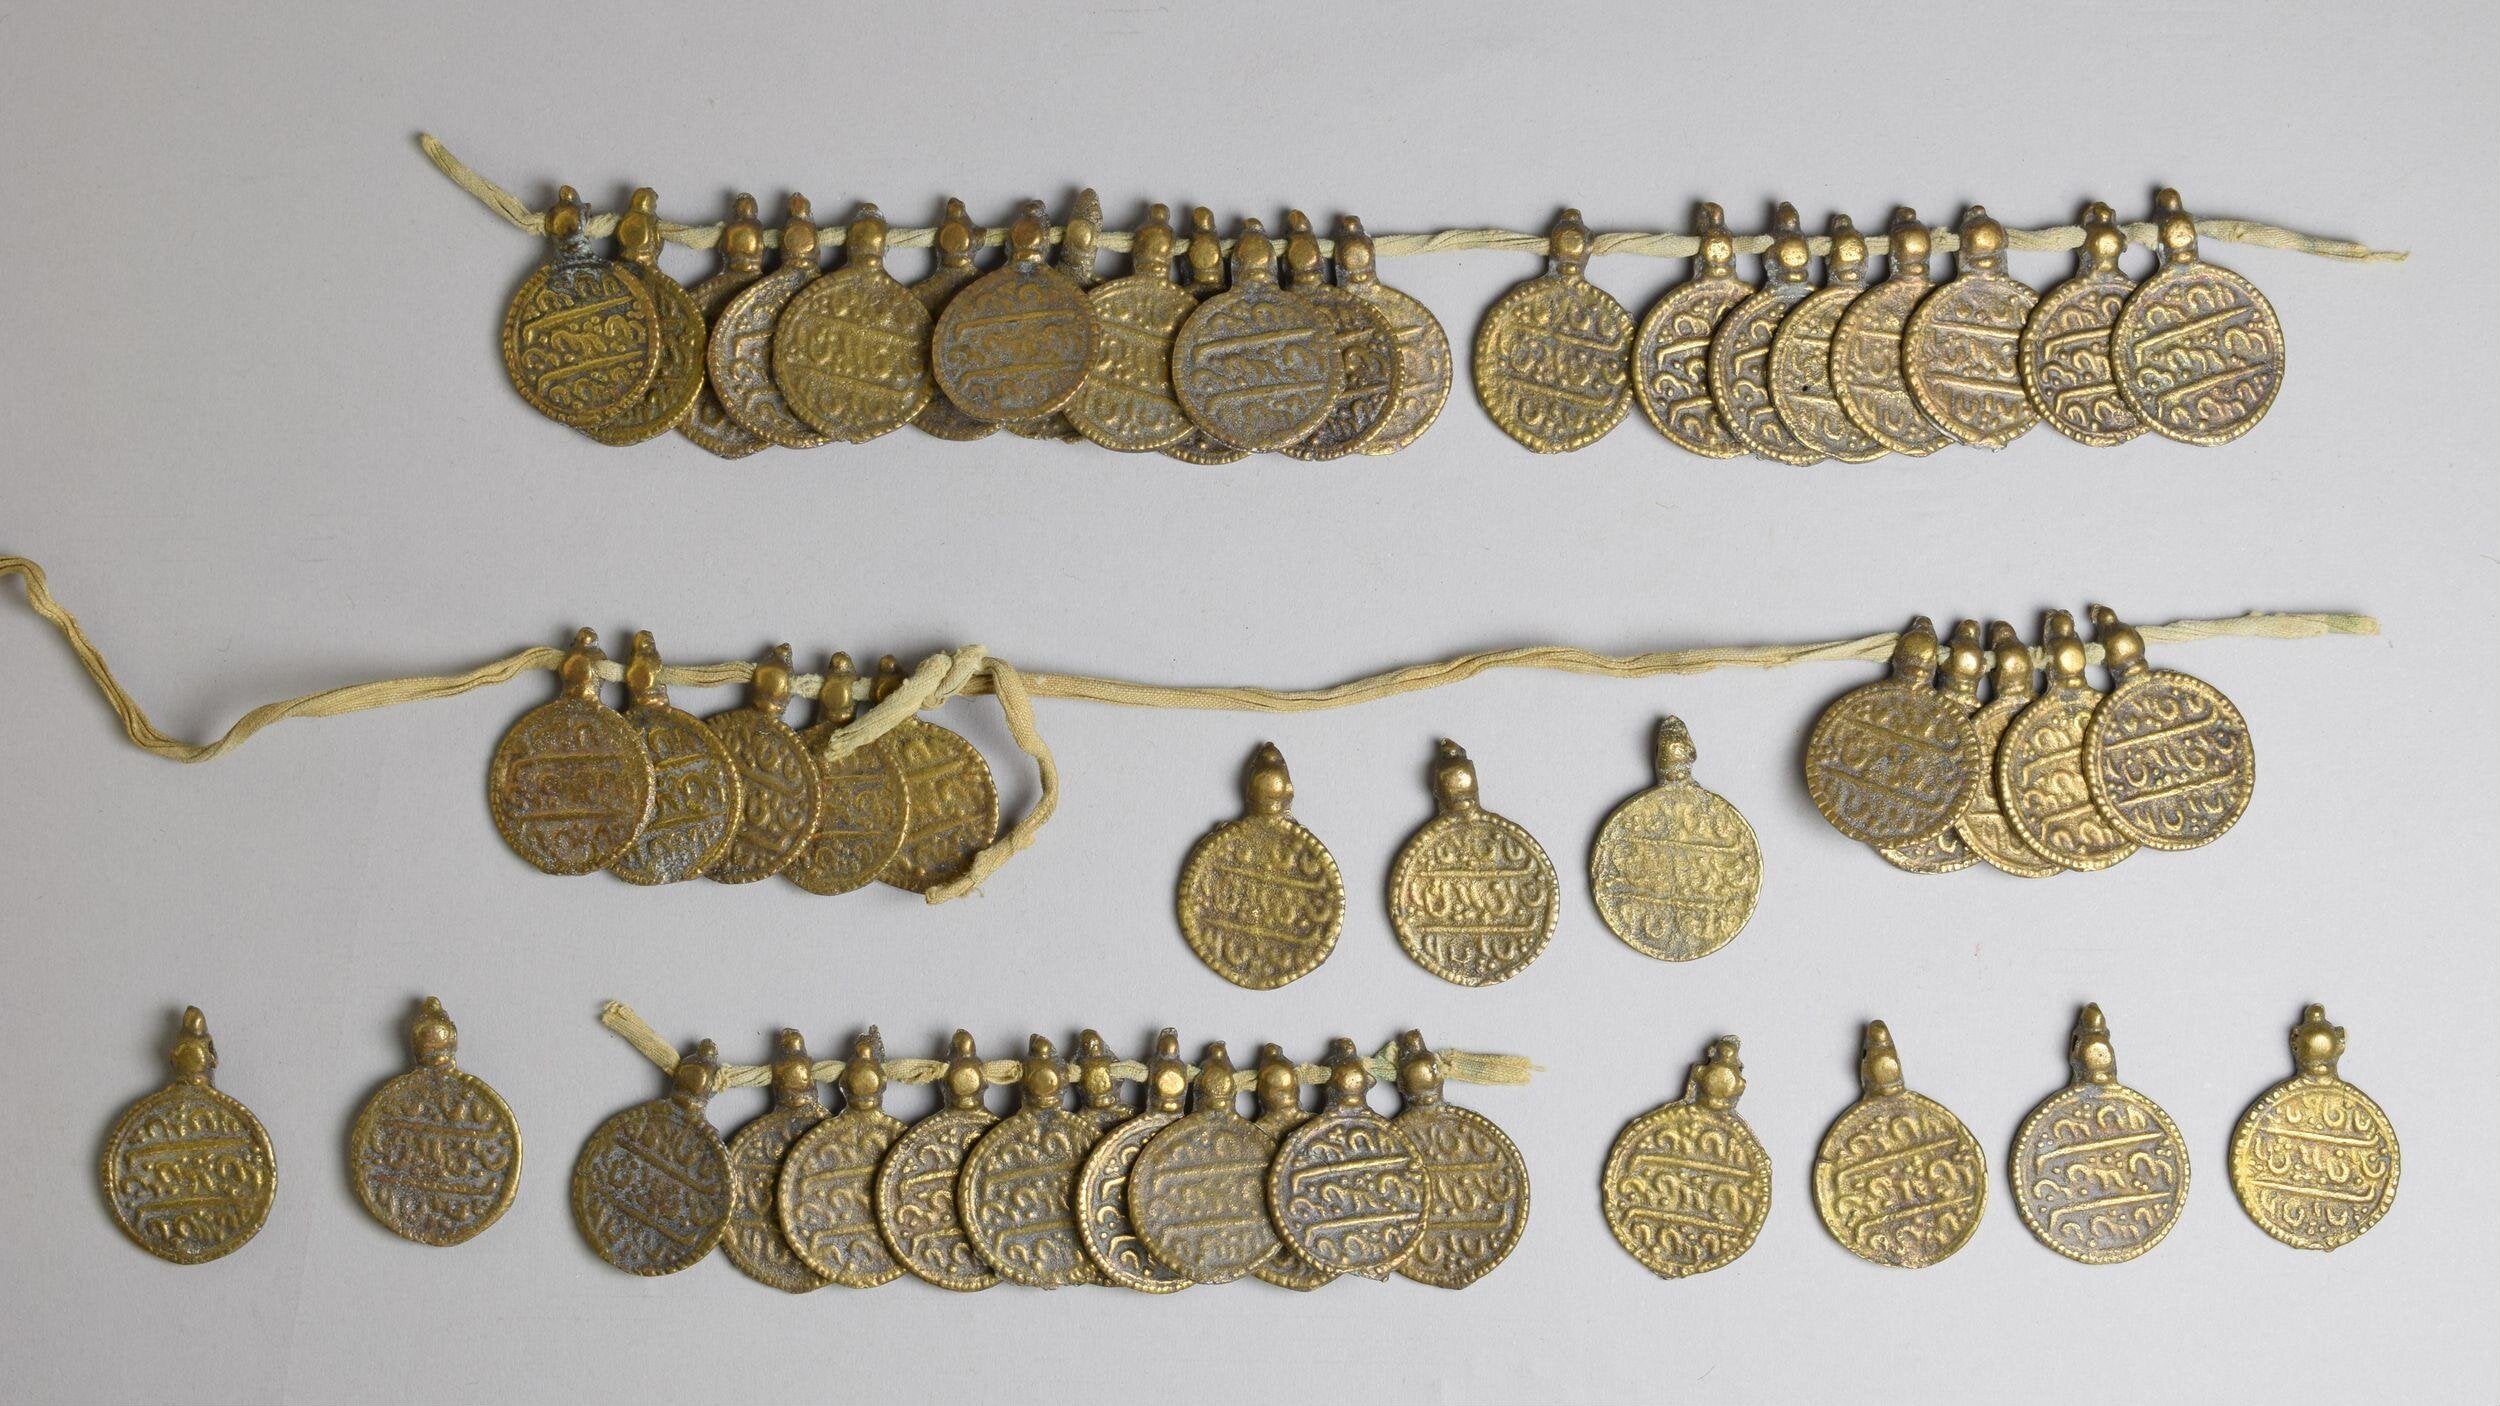 http://www.aurusjewels.com/cdn/shop/articles/Coin_necklaces.jpg?v=1674051988